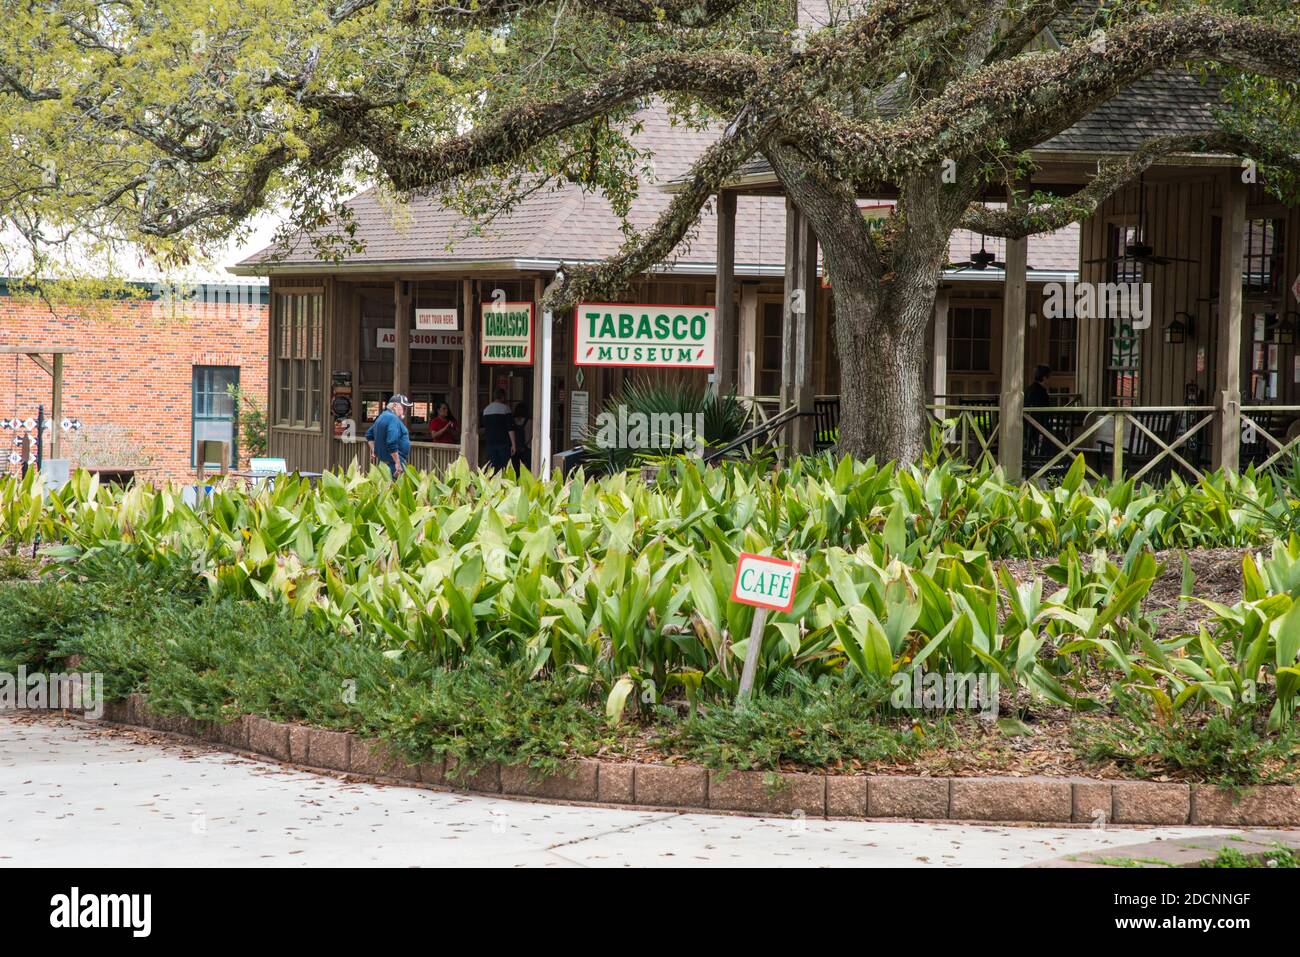 Vorderansicht des Tabasco Museums und Geschäfts, Avery Island, Louisiana, USA Stockfoto